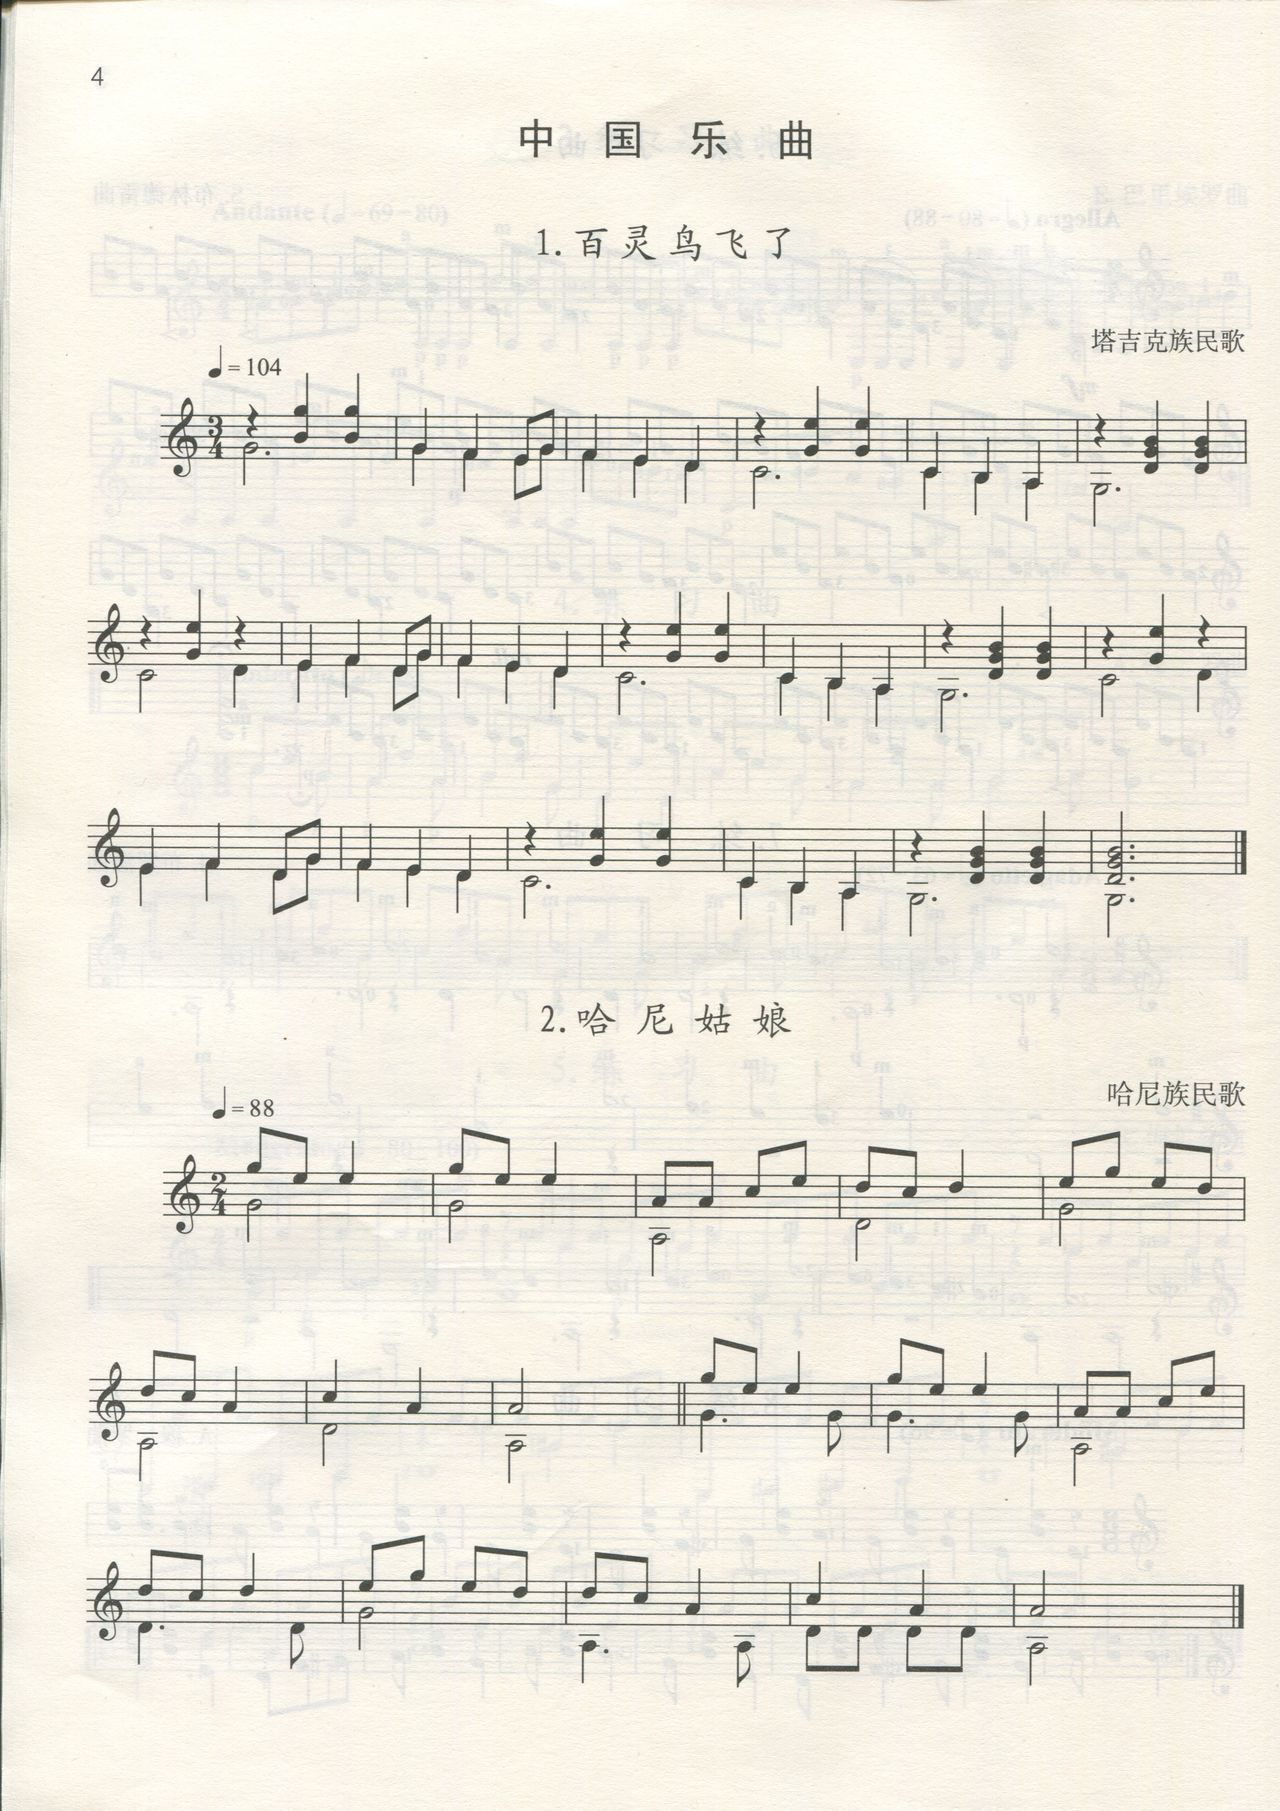 [中国音乐家协会]古典吉他考级作品集第一级-第四级 15